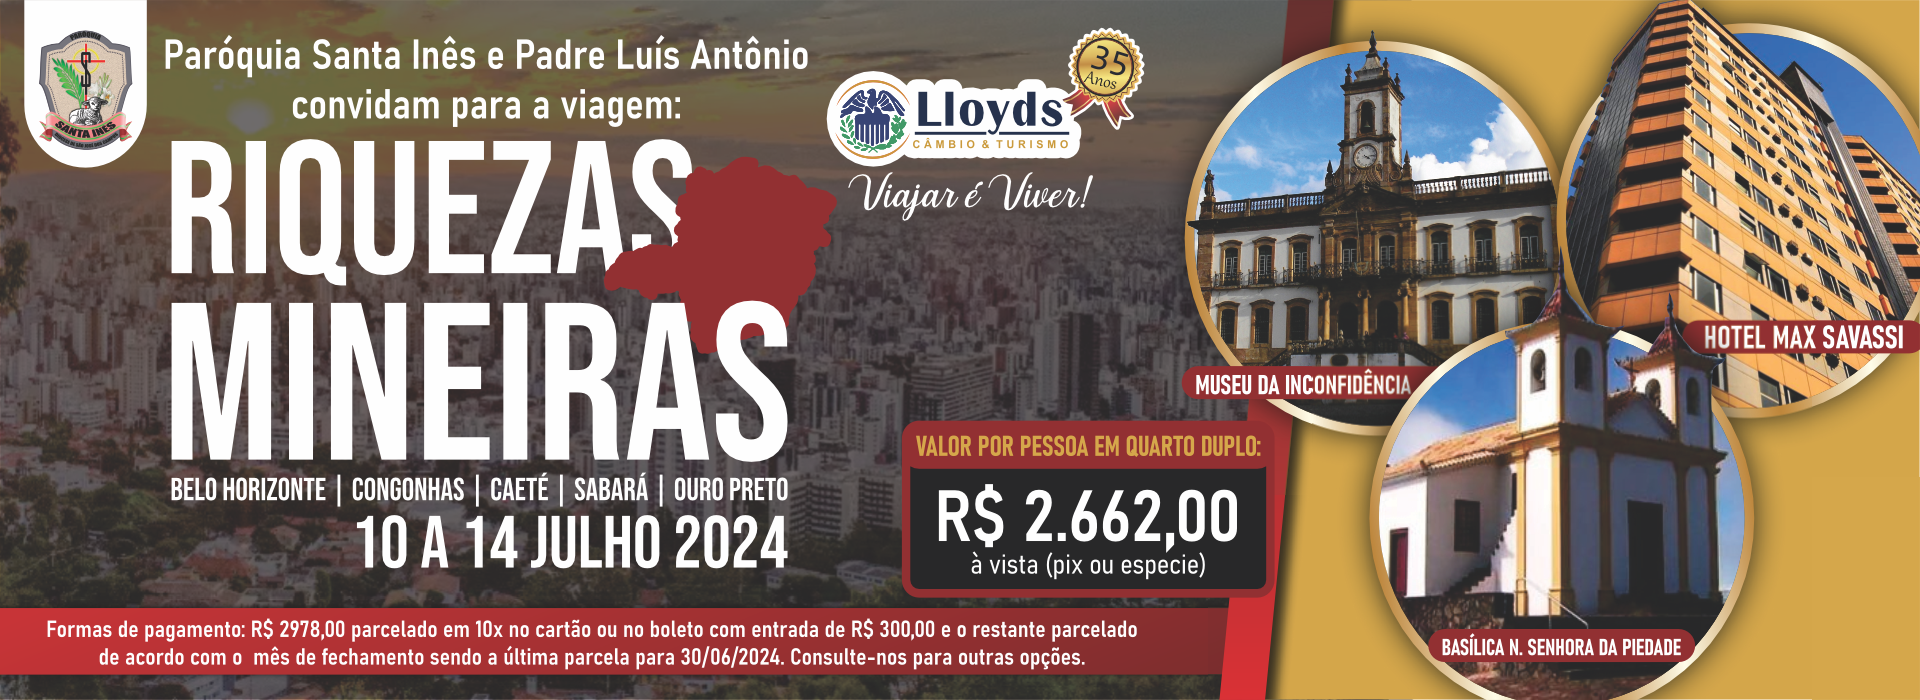 Lloyds – Câmbio & Turismo – Câmbio & Turismo